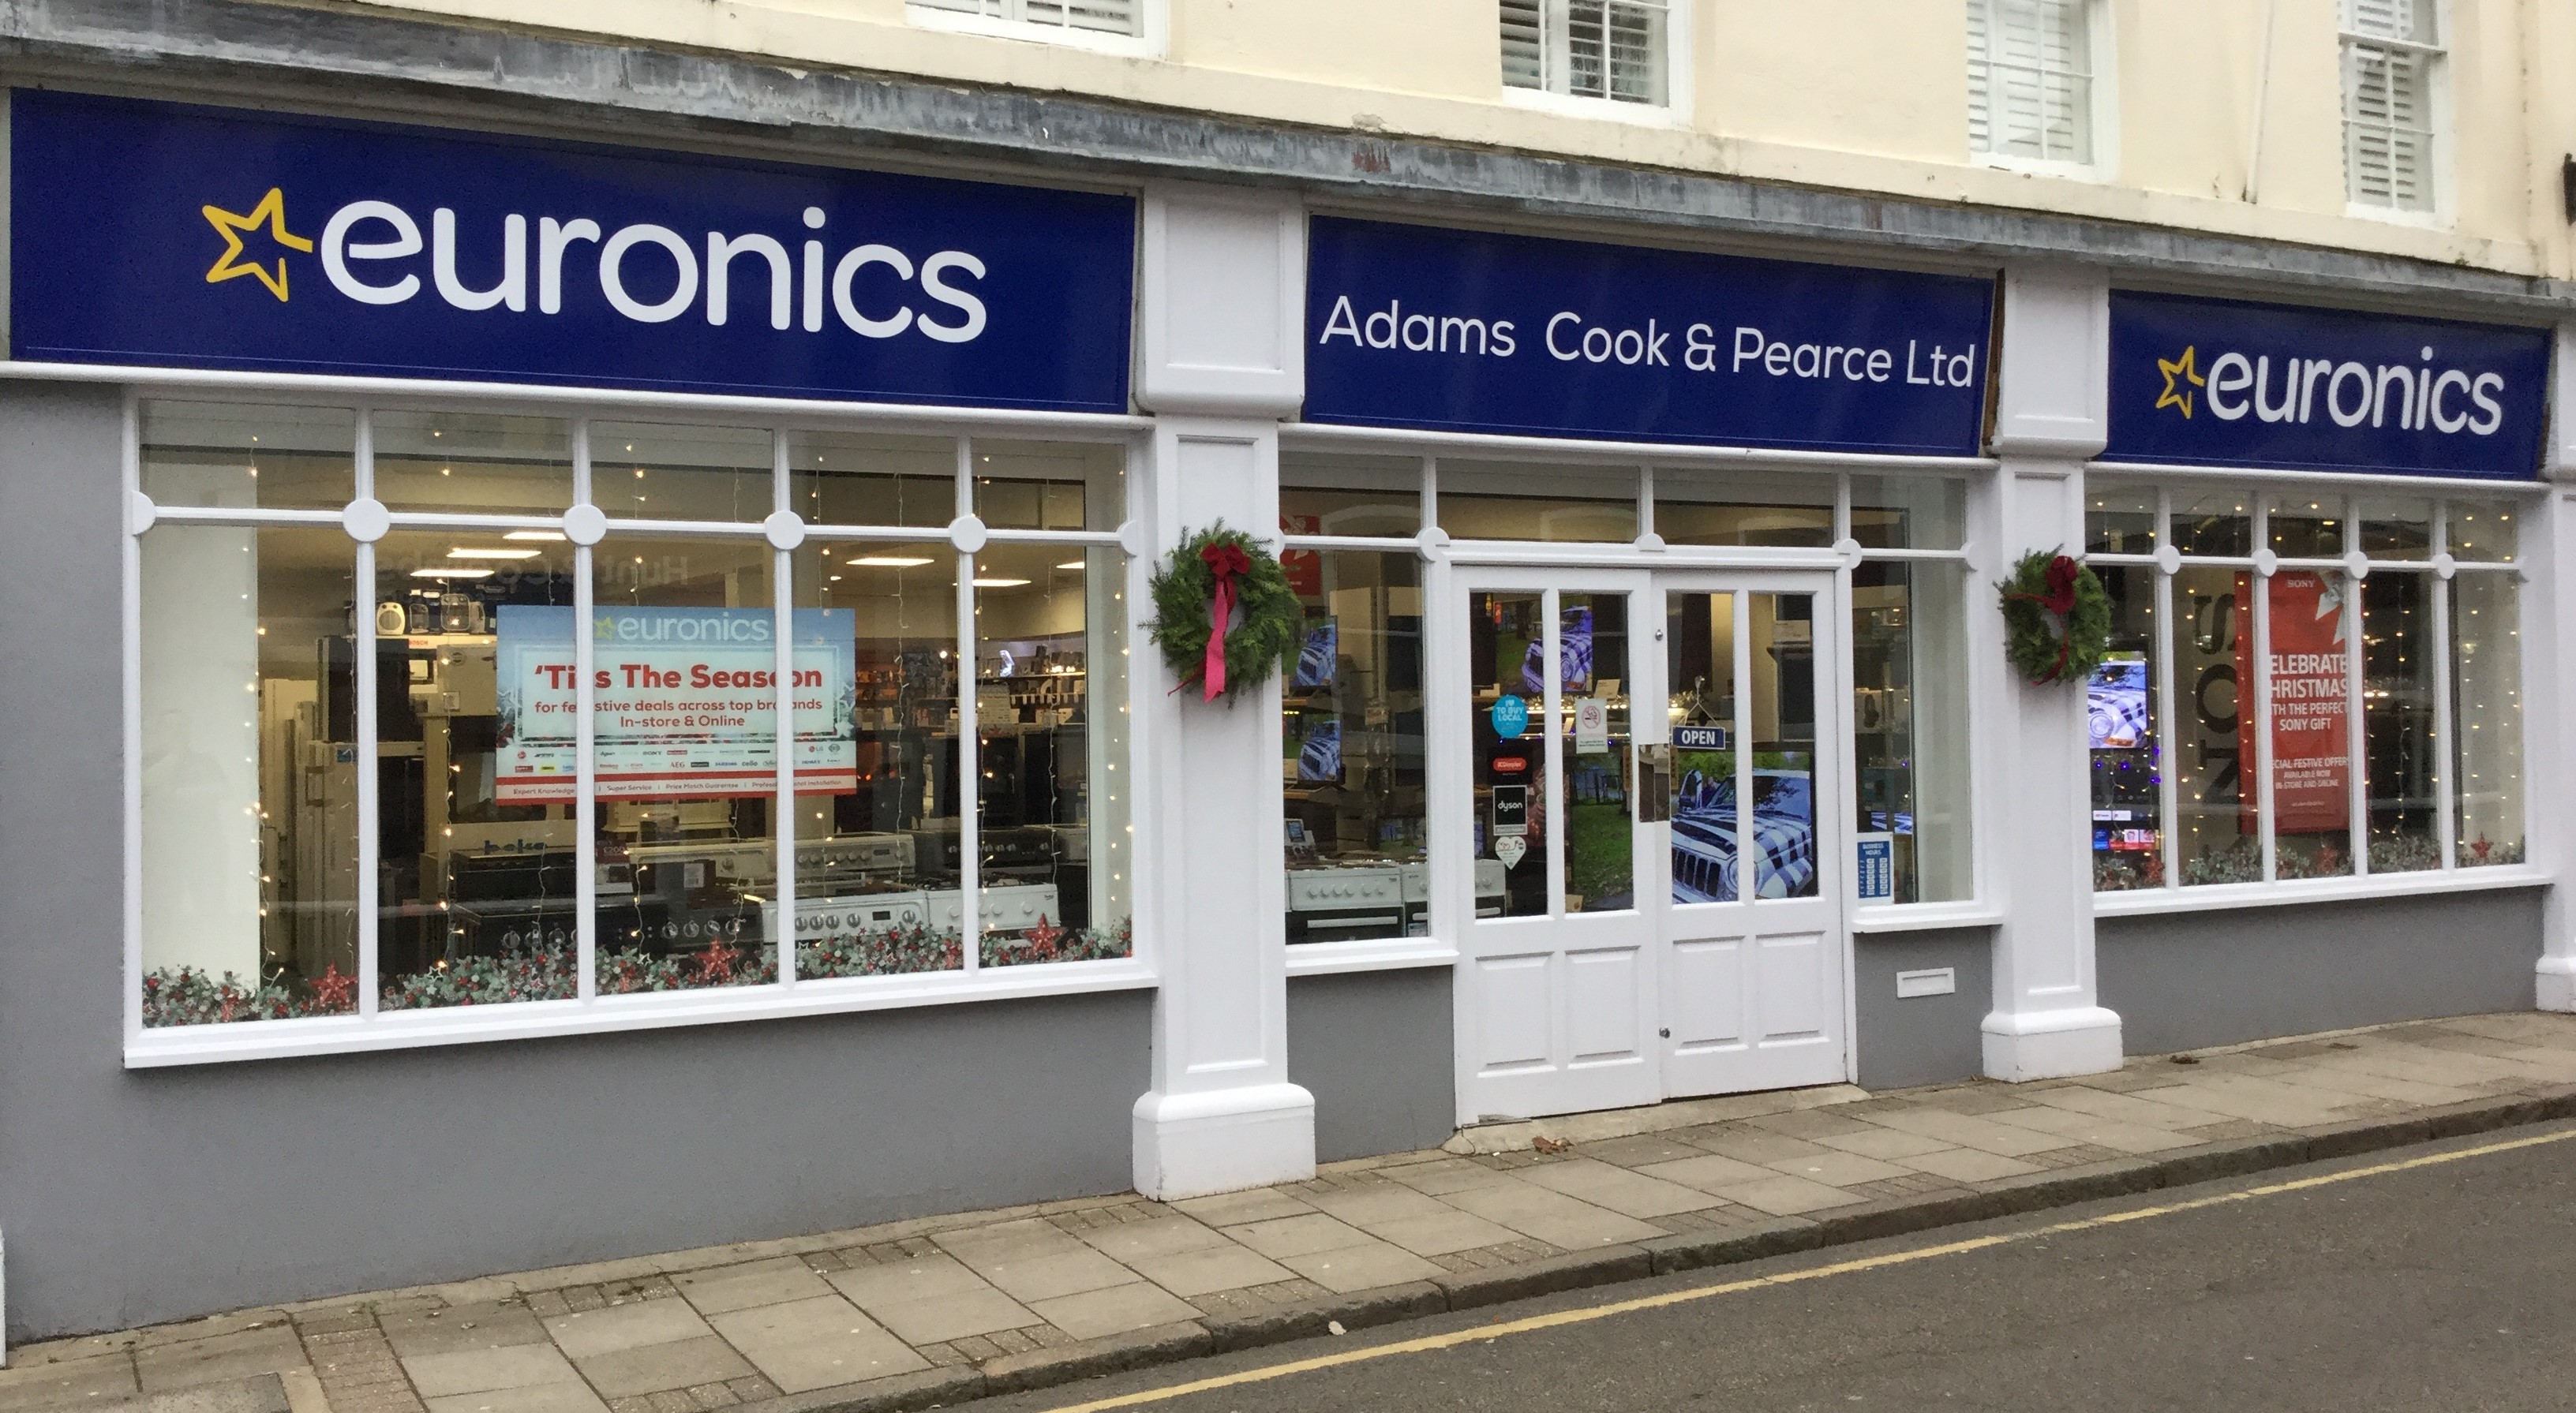 Adams Cook & Pearce Ltd